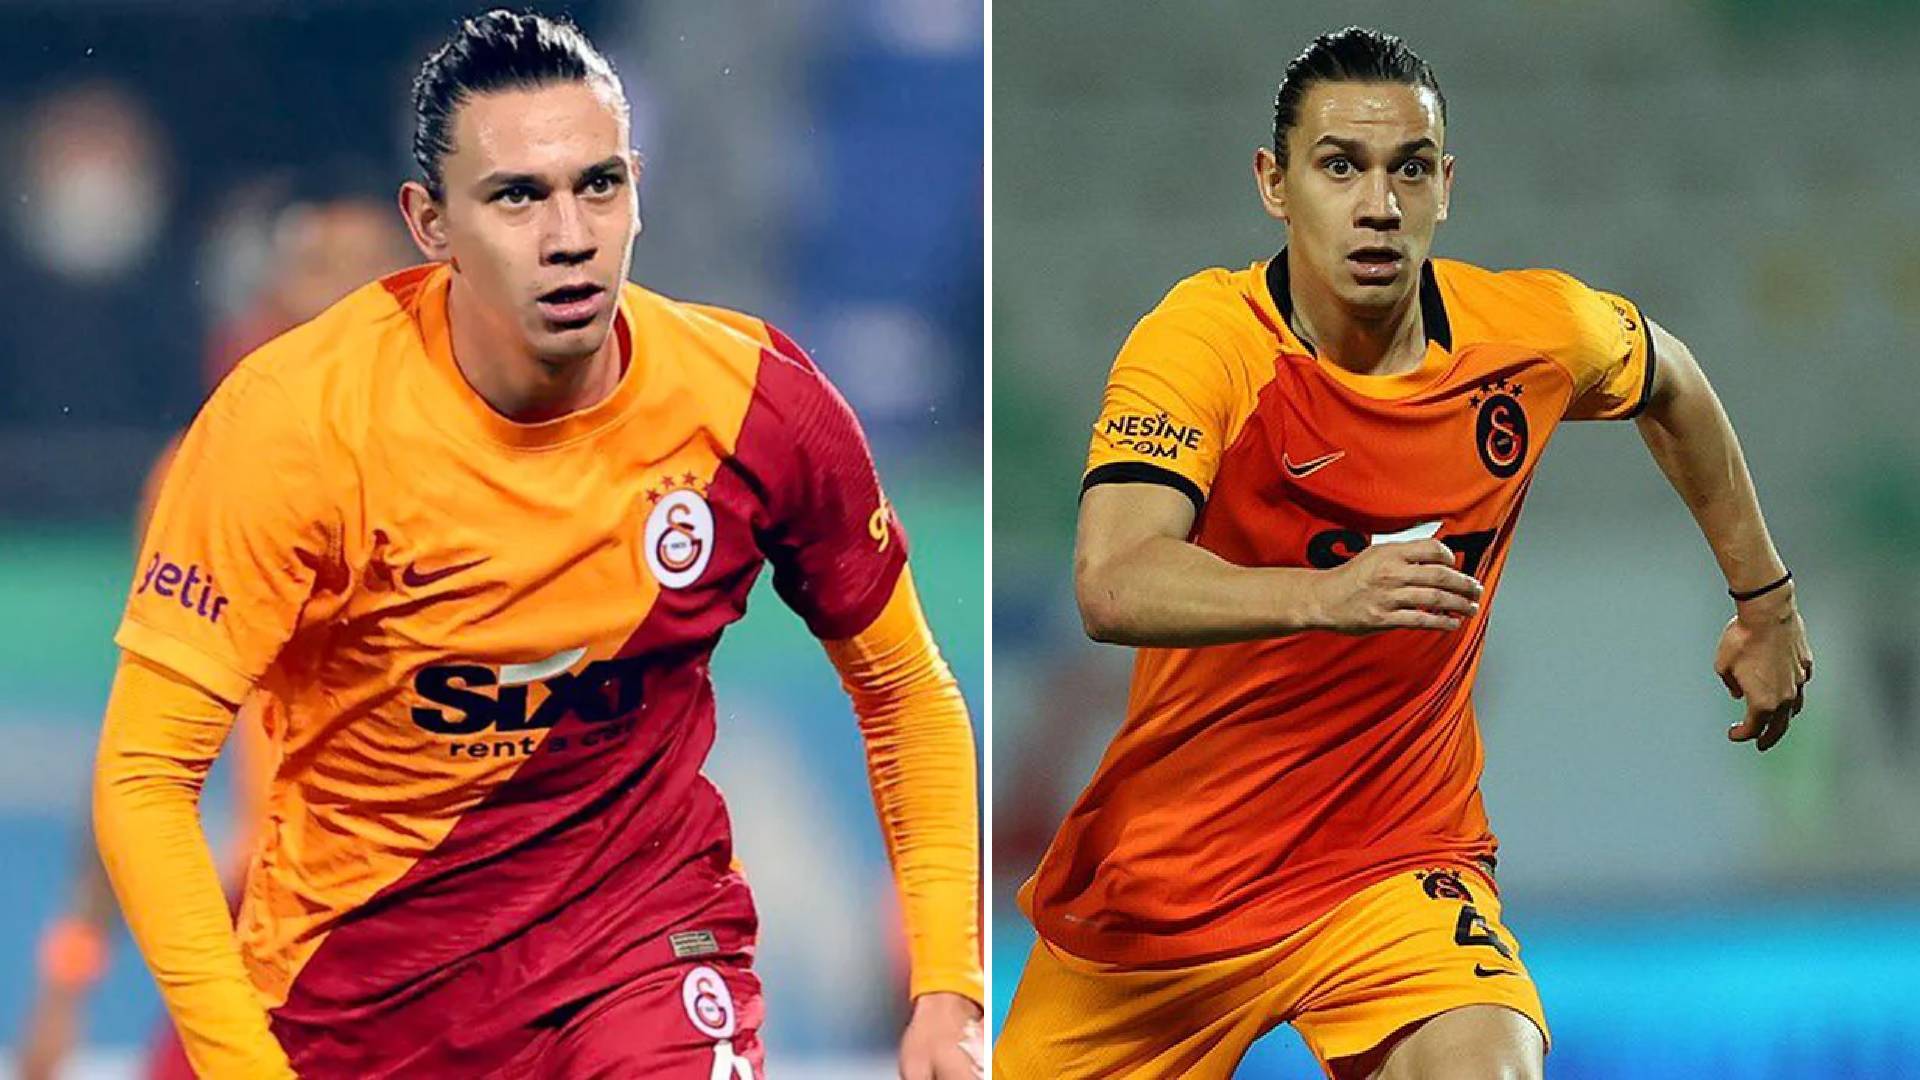 Taylan Antalyalı'nın Galatasaray'a transferinde yeni belgeler ortaya çıktı